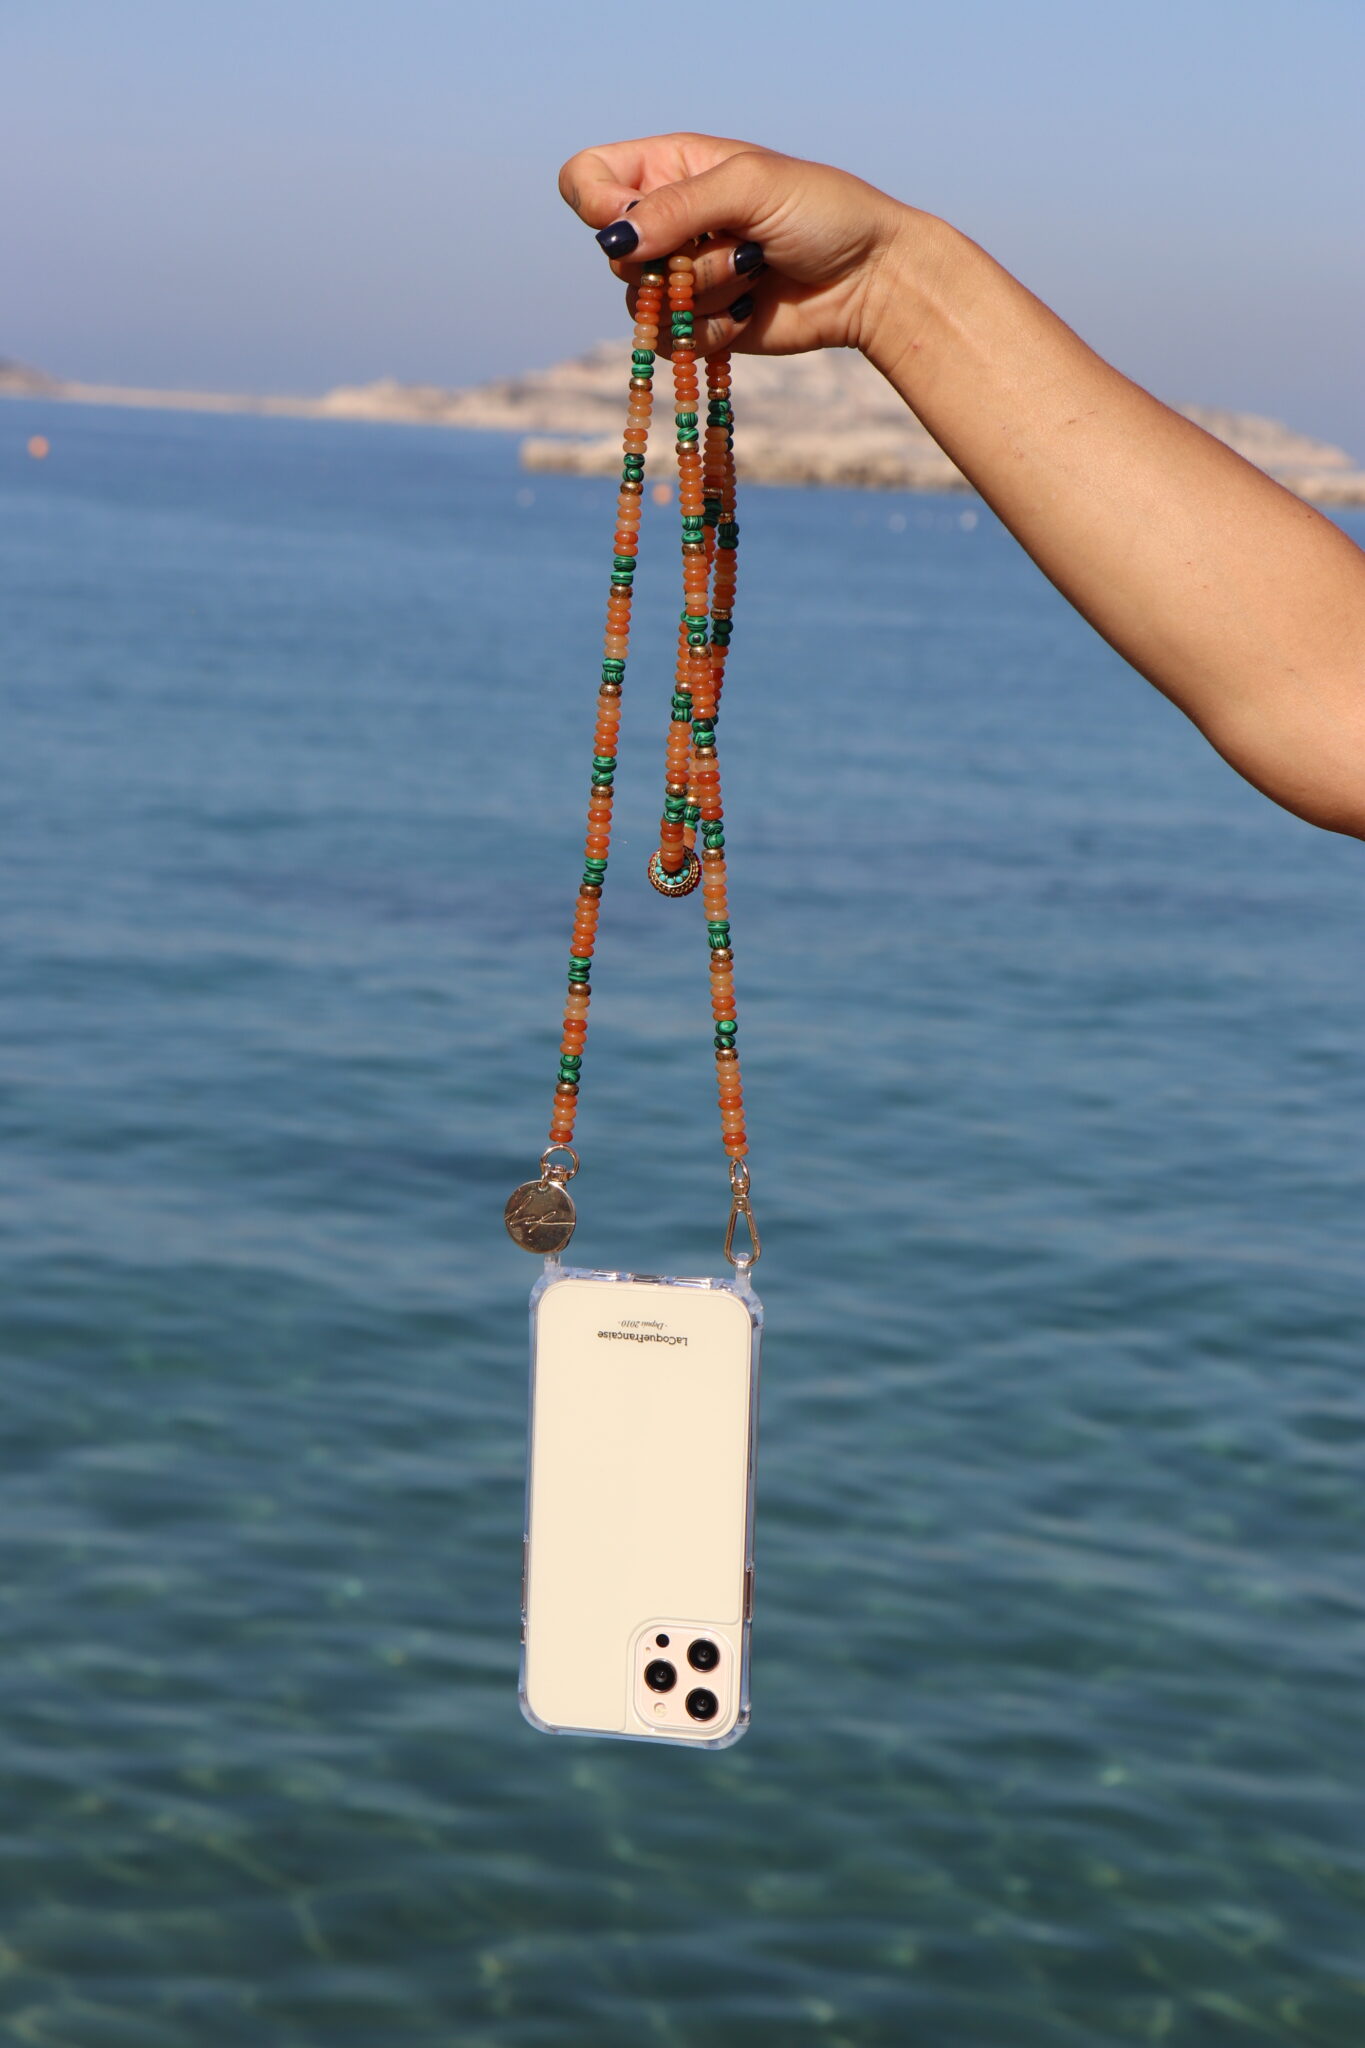 Chaîne de téléphone colorée tenue dans une main face à la mer